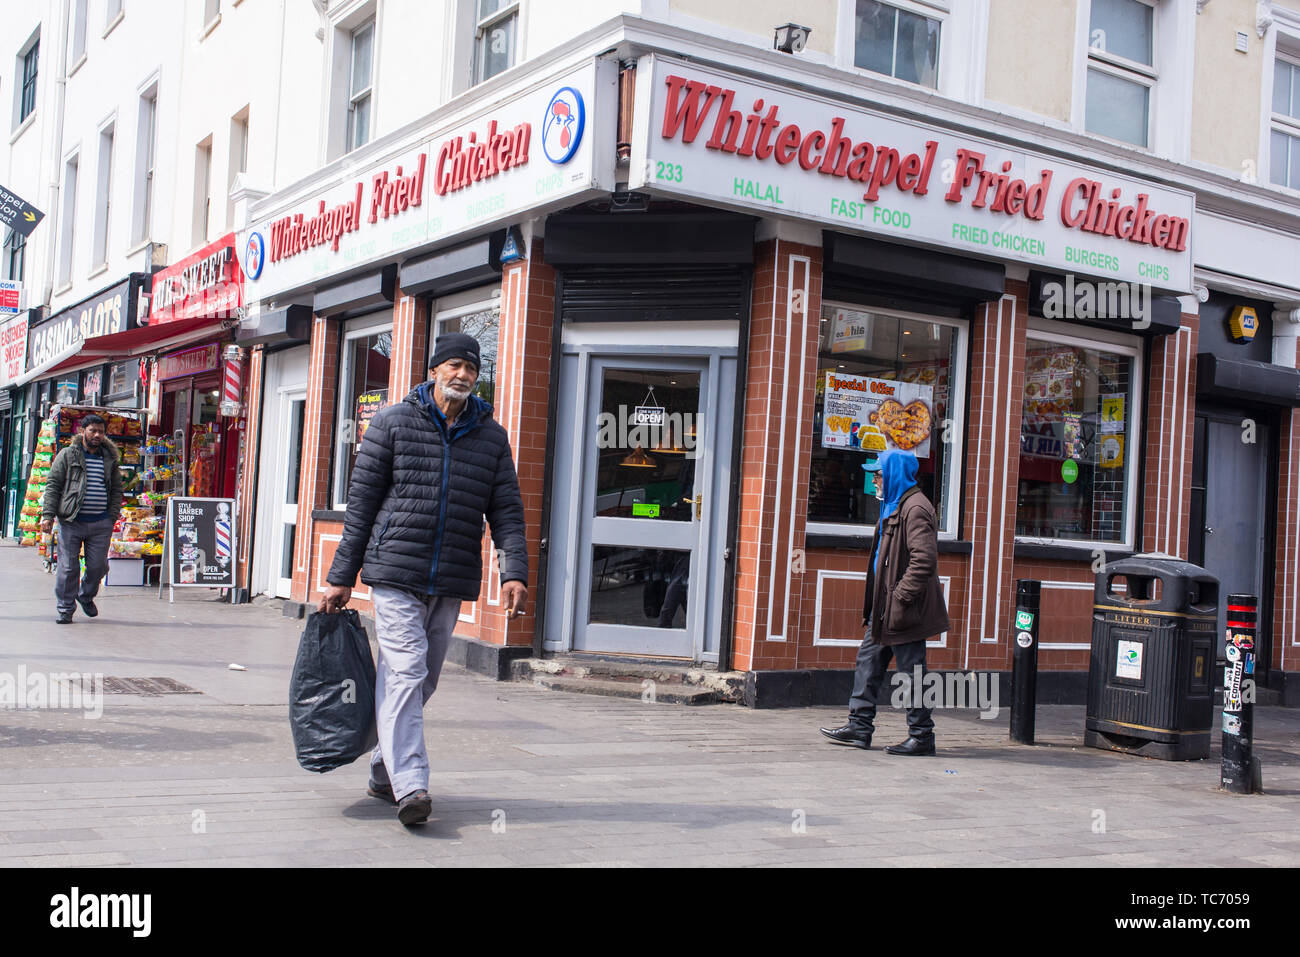 Whitechapel, London, England, UK - Avril 2019 : Whitechapel fried chicken shop avec les gens marcher dans avant de lui sur Whitechapel Road, Shadwell, Londres Banque D'Images